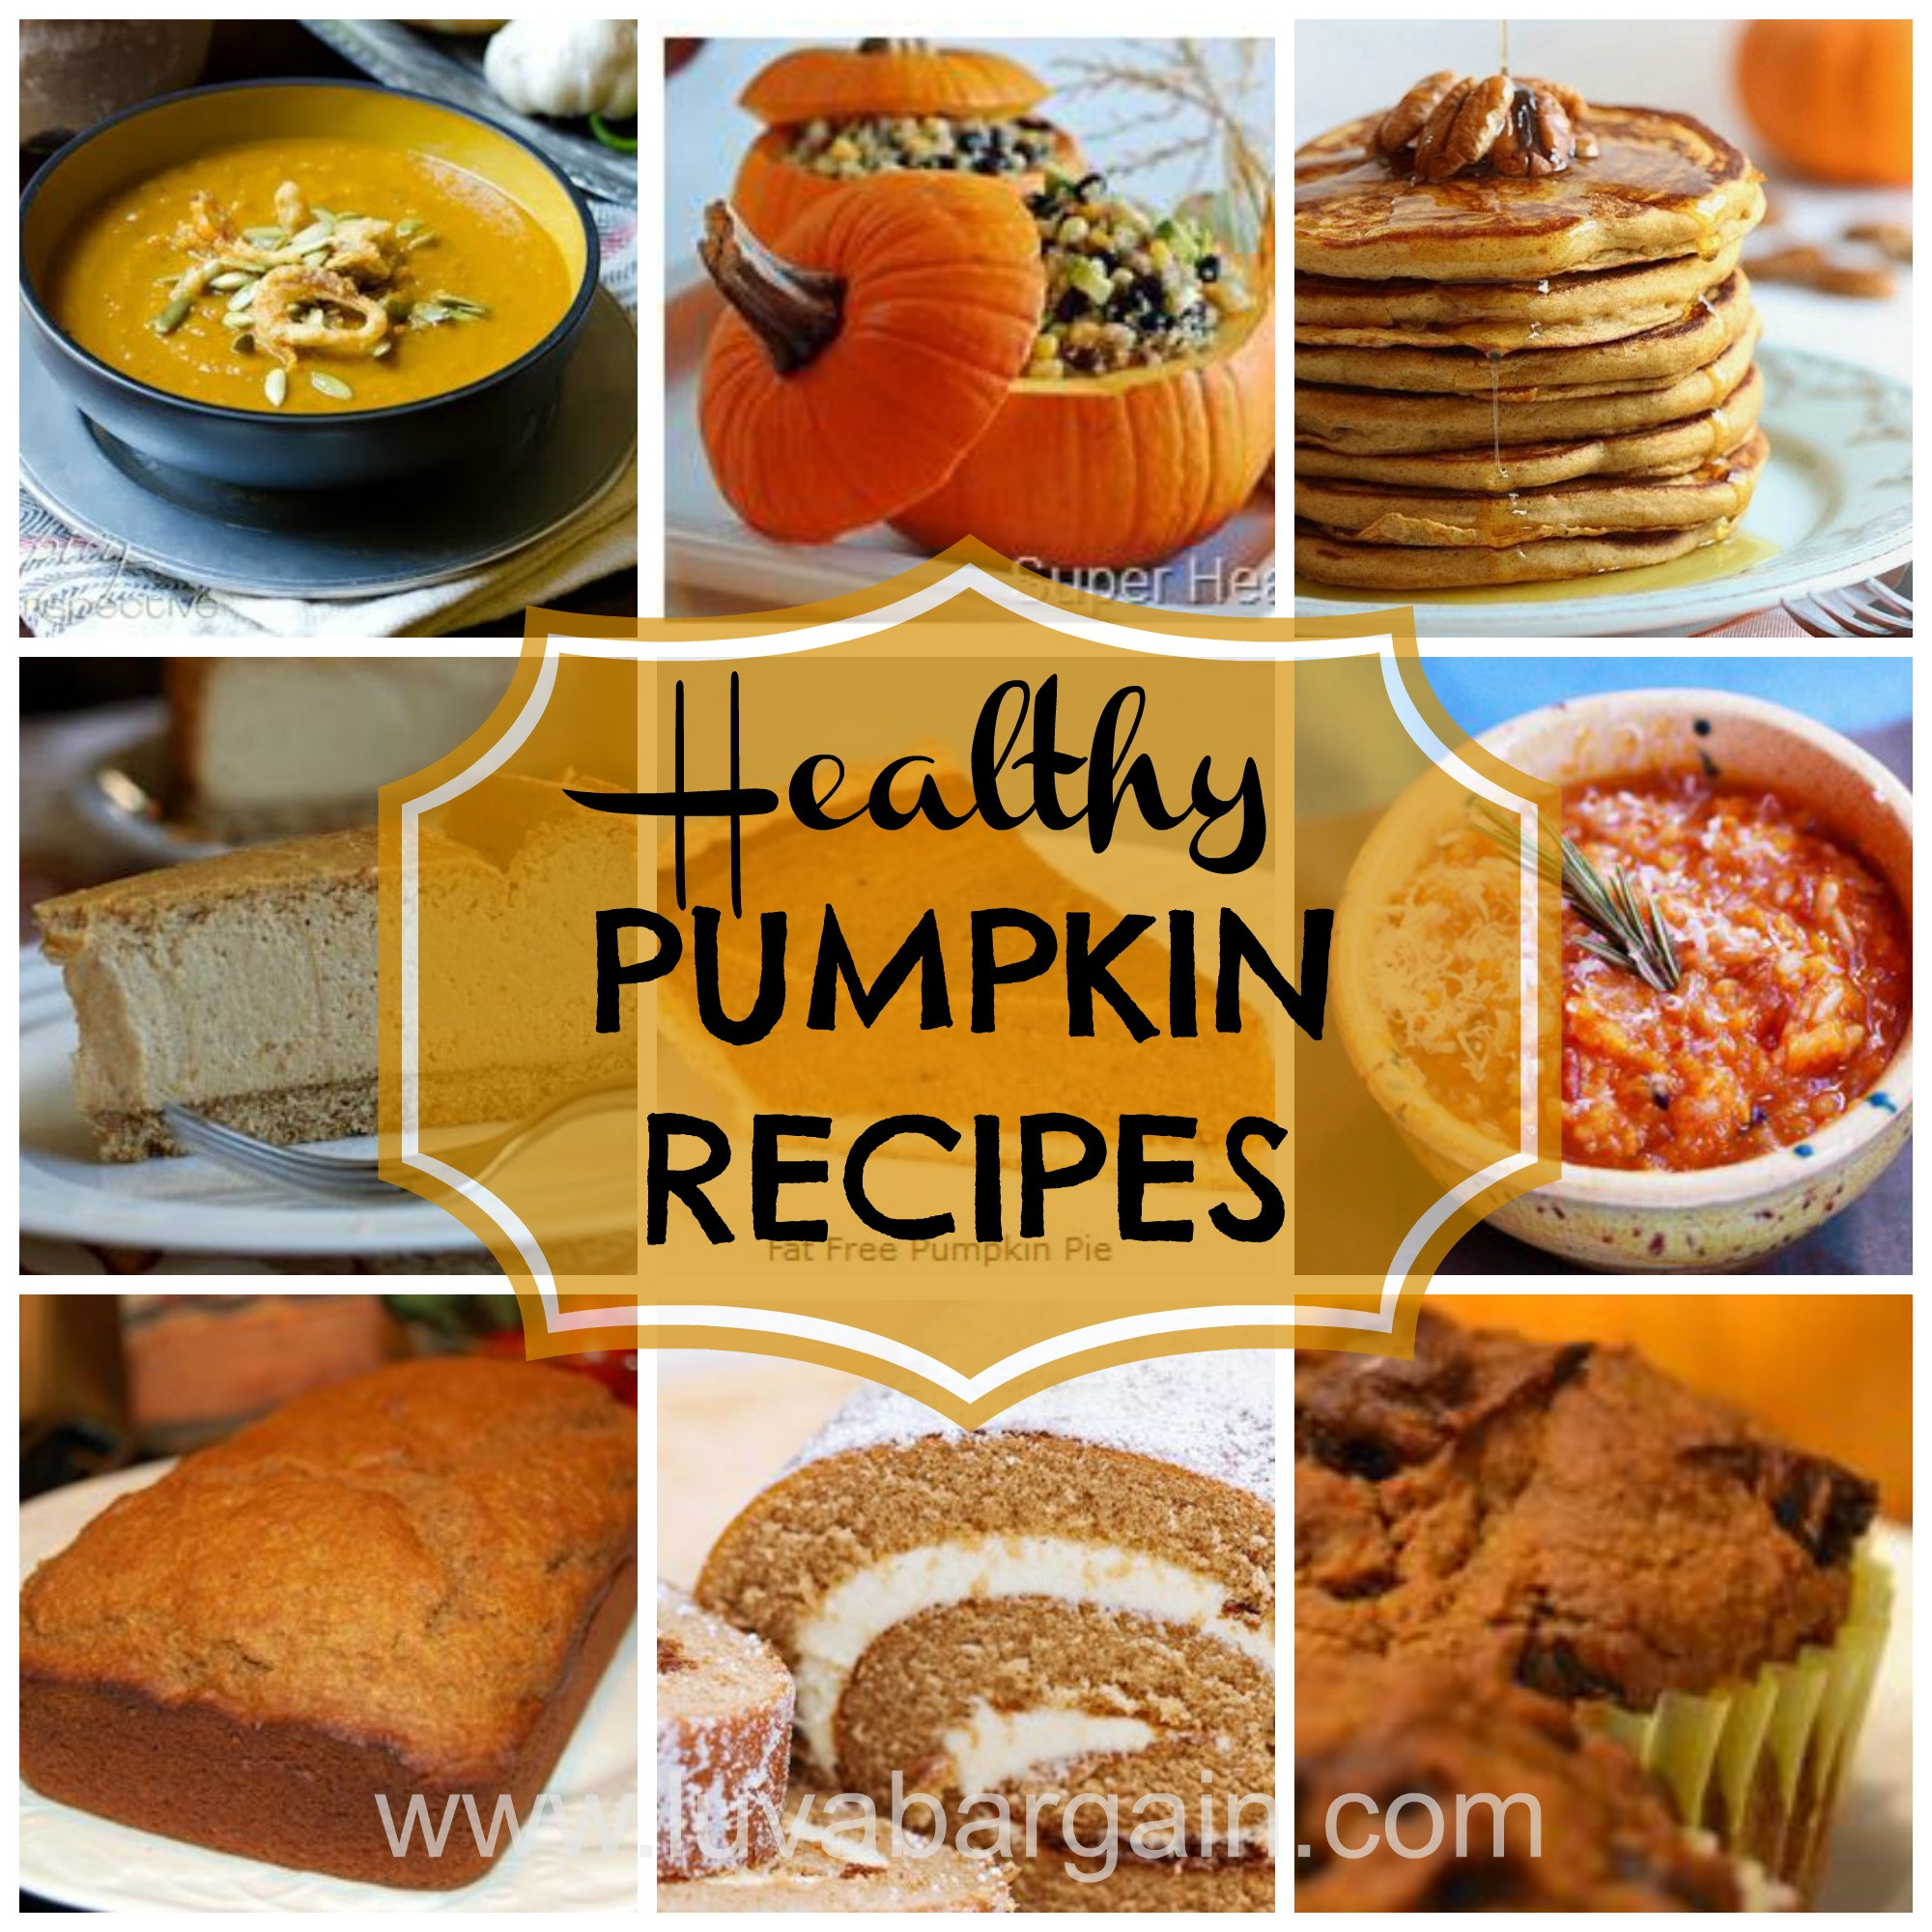 Pumpkin Recipes Healthy
 Healthy Pumpkin Recipes